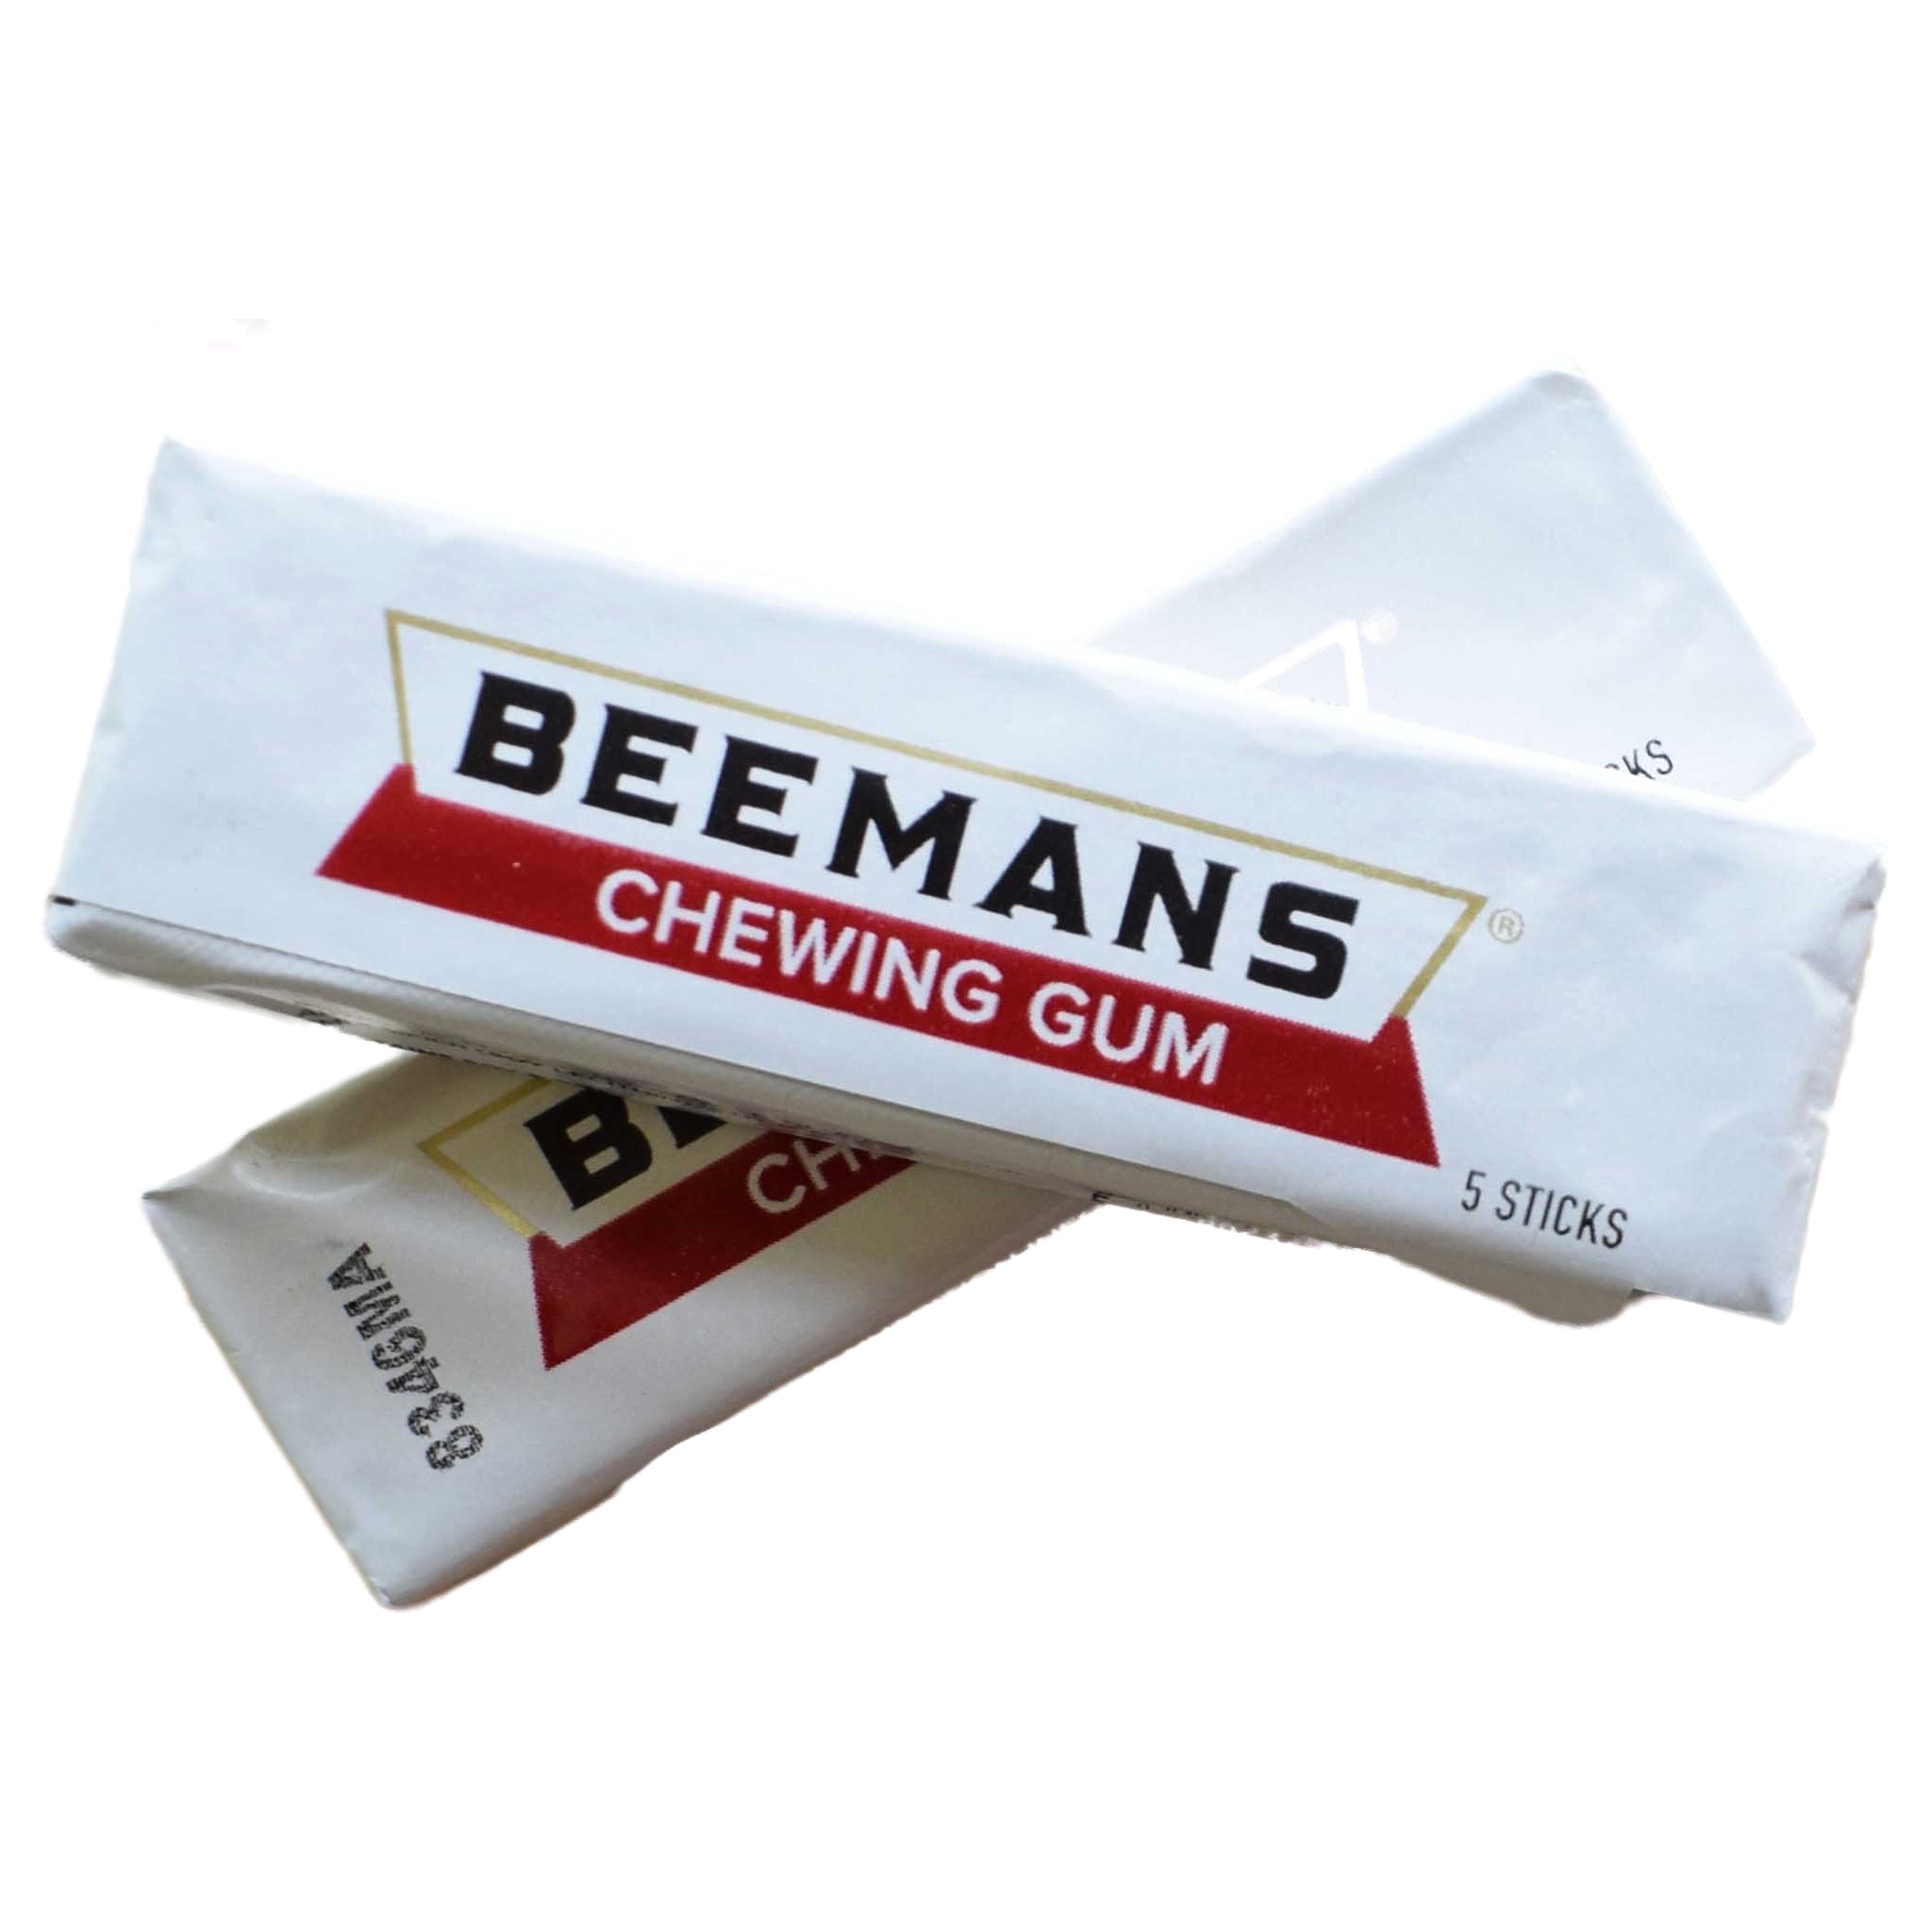 Beemans Gum